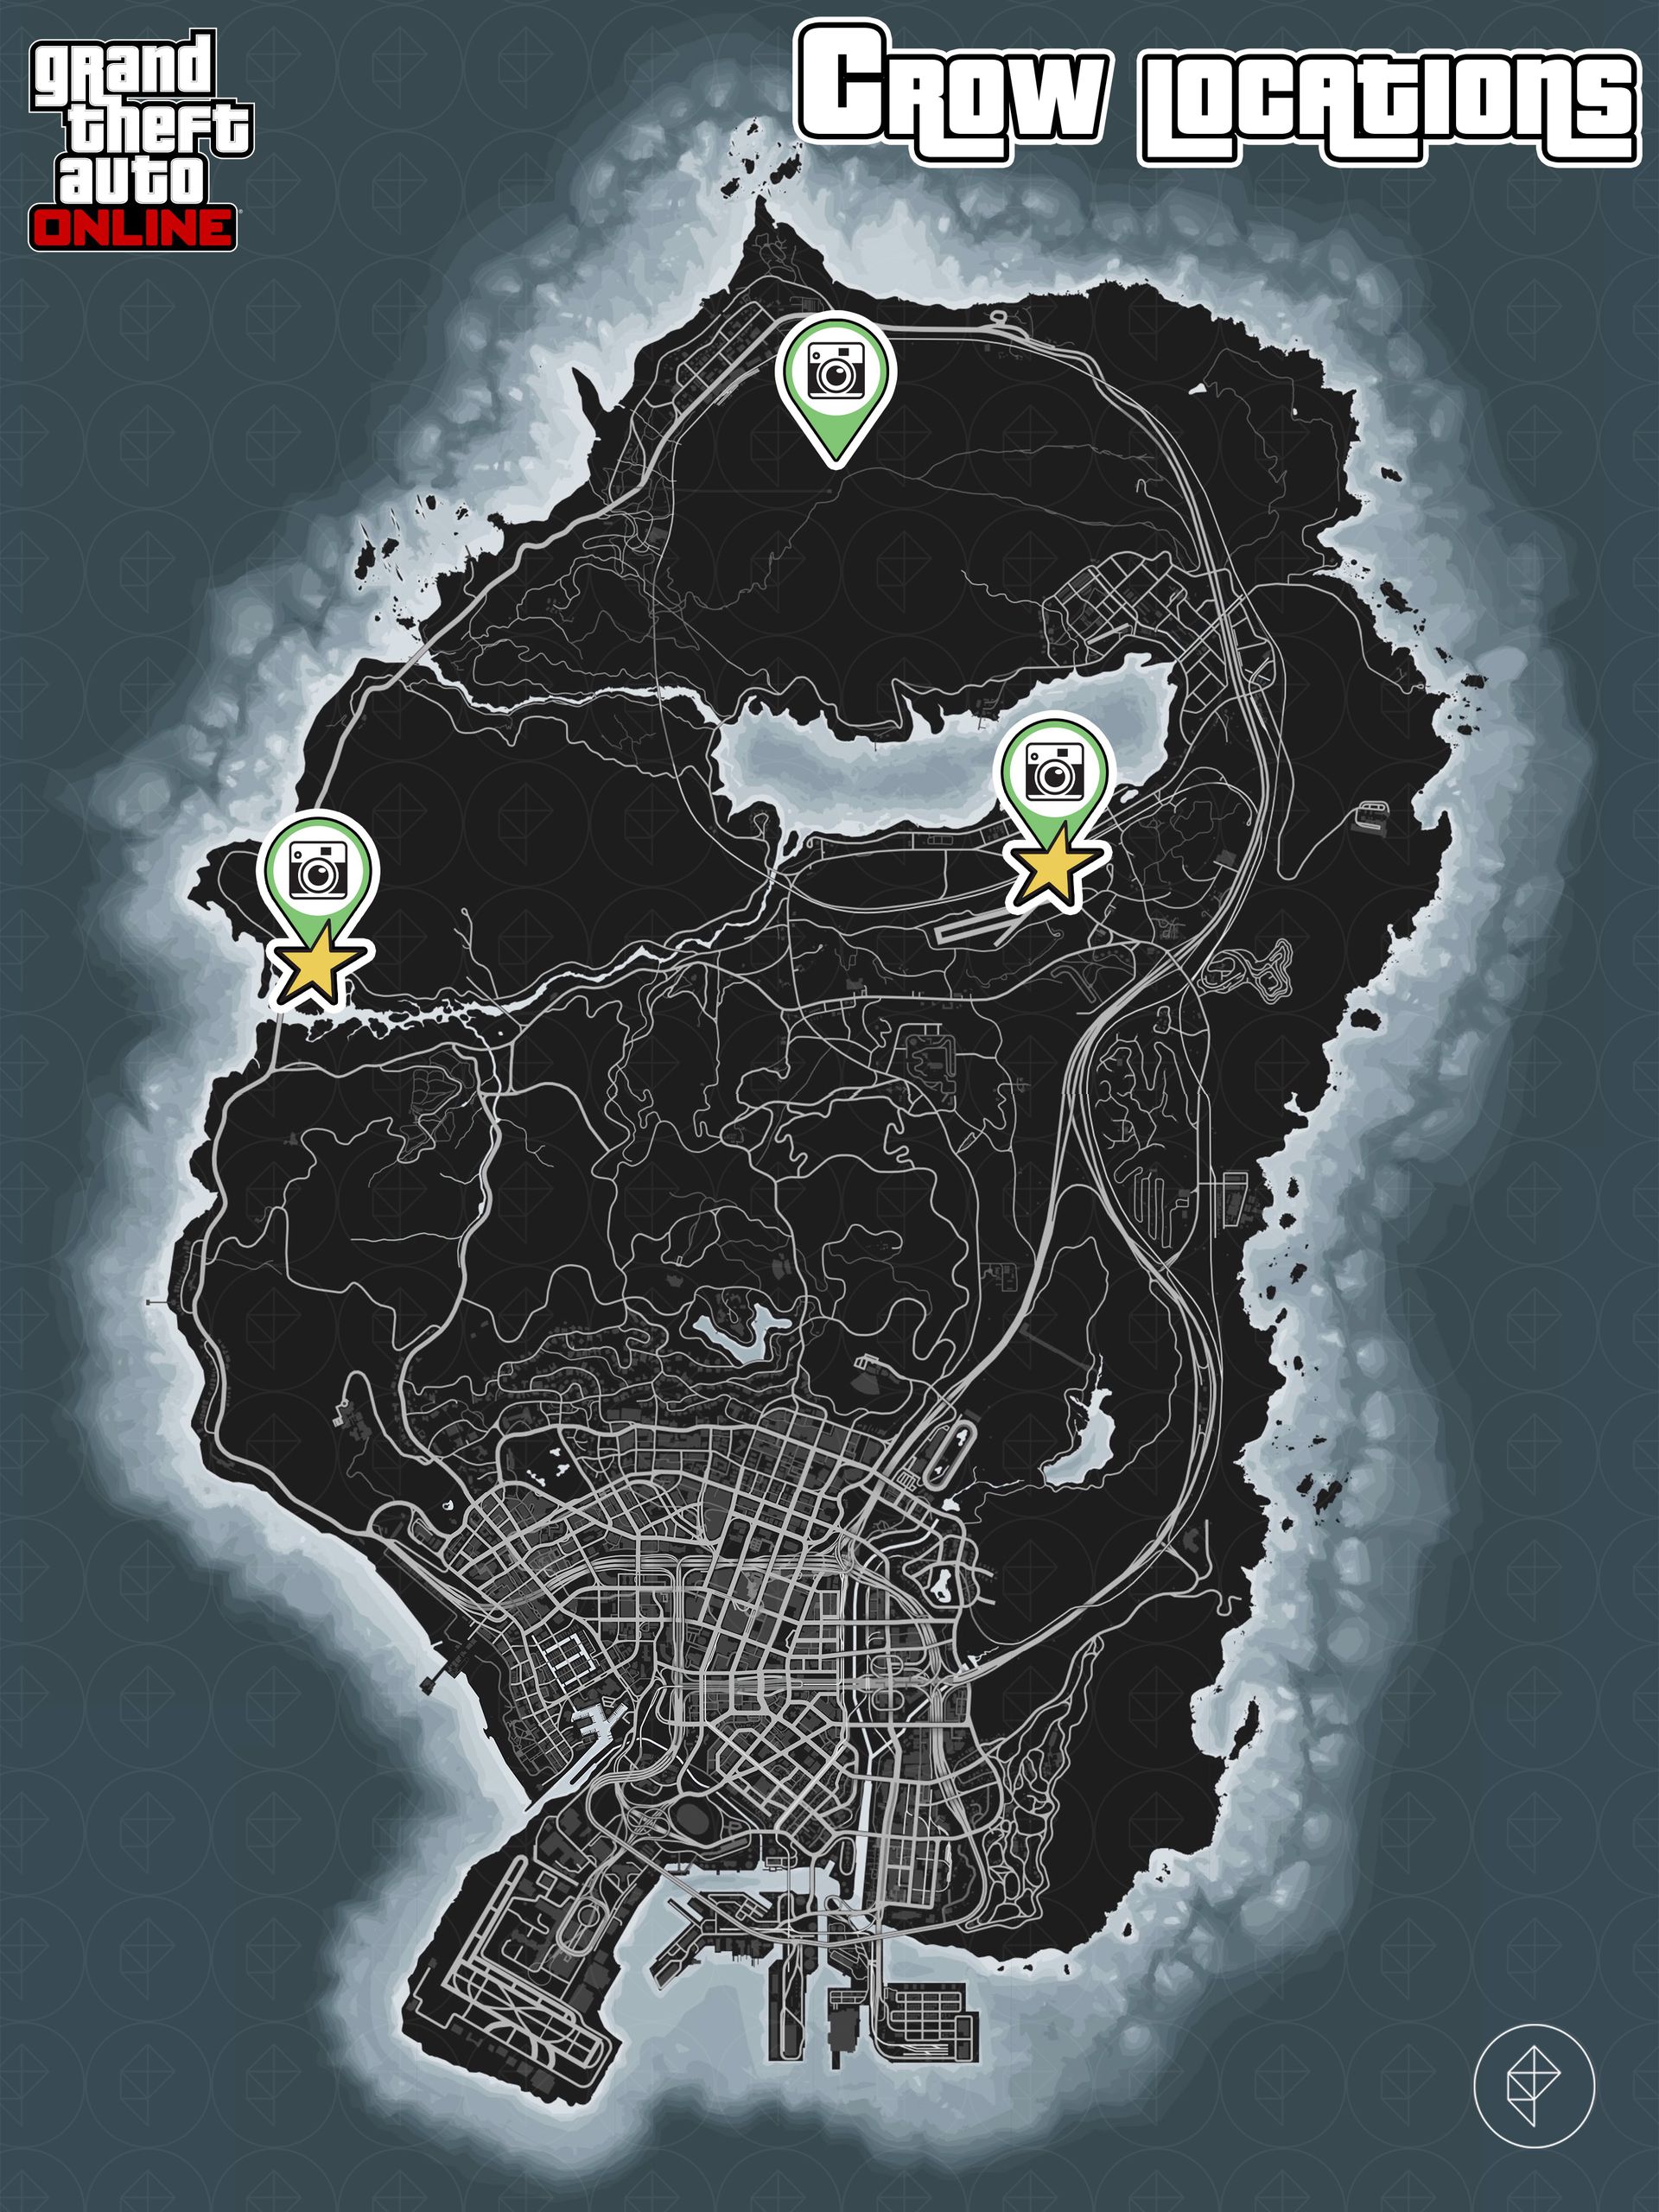 Carte de GTA Online montrant les emplacements des corbeaux